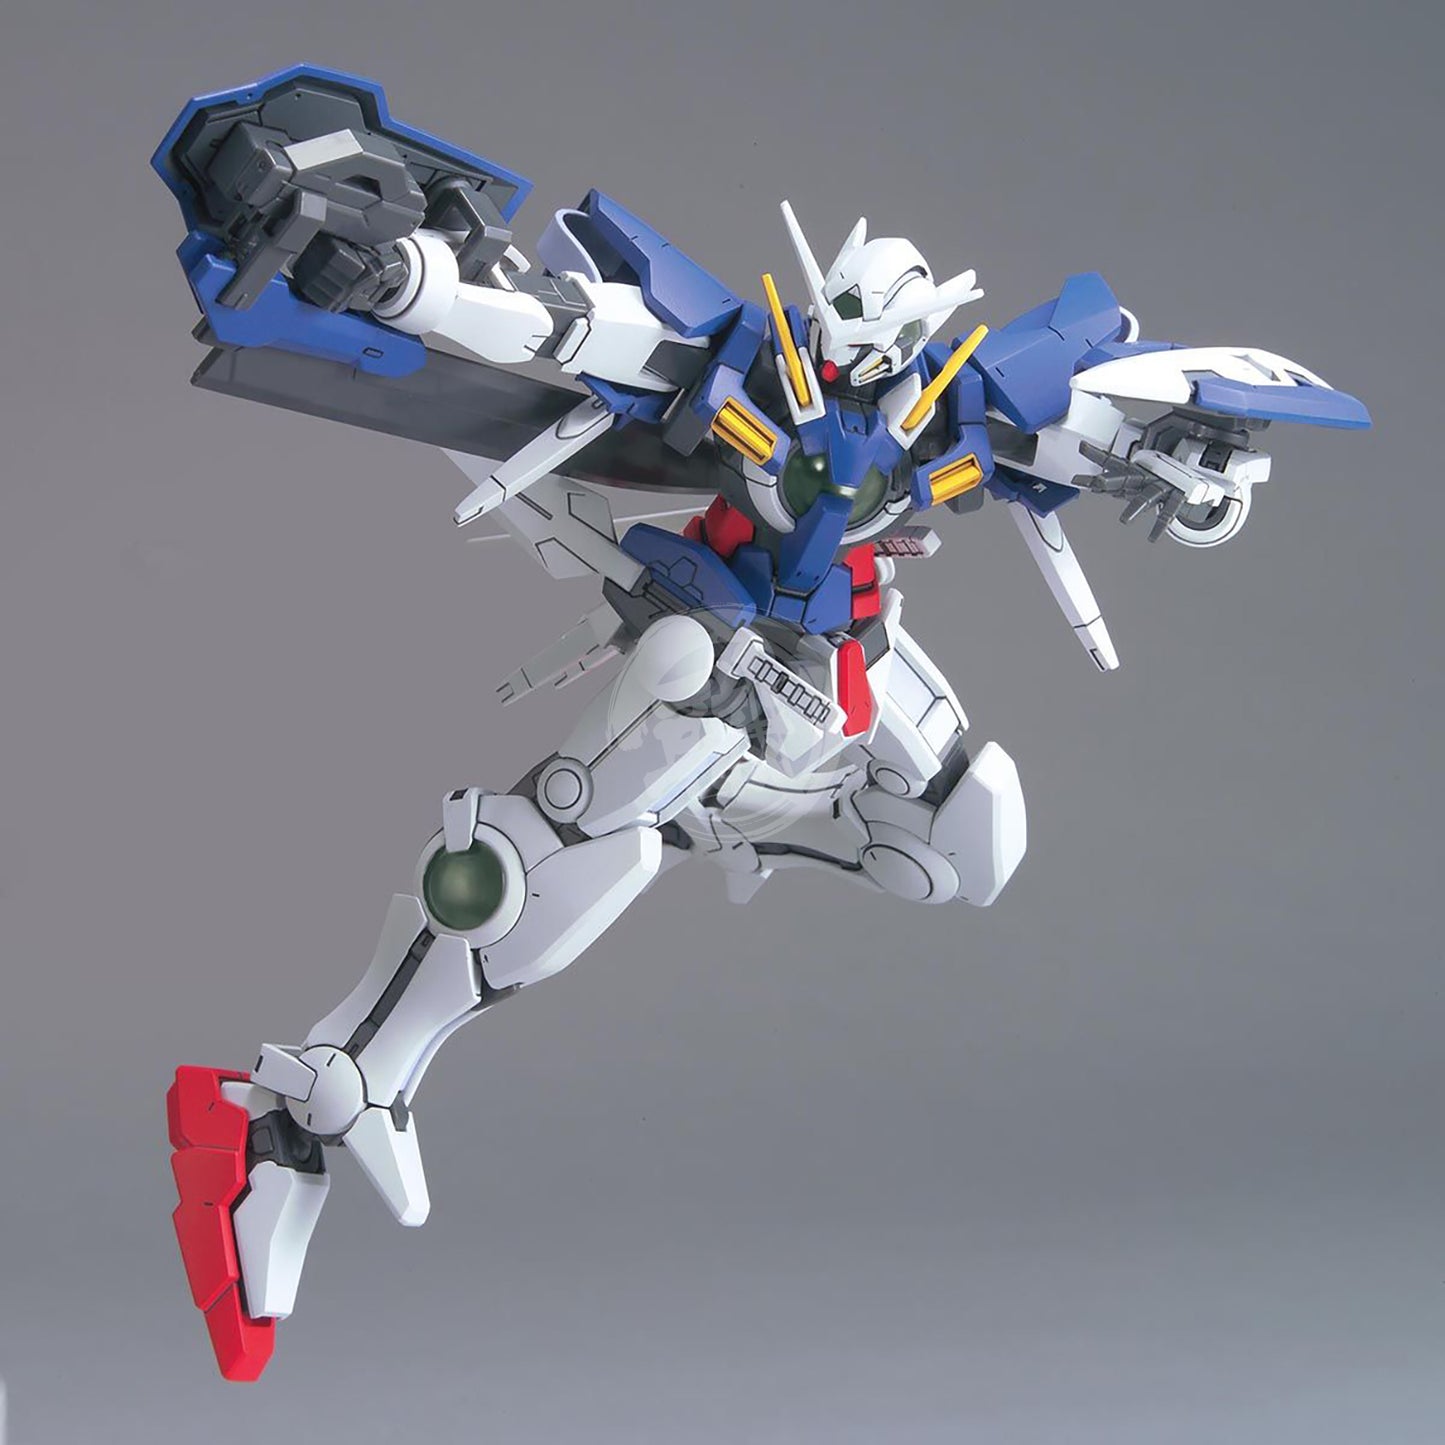 HG Gundam Exia - ShokuninGunpla